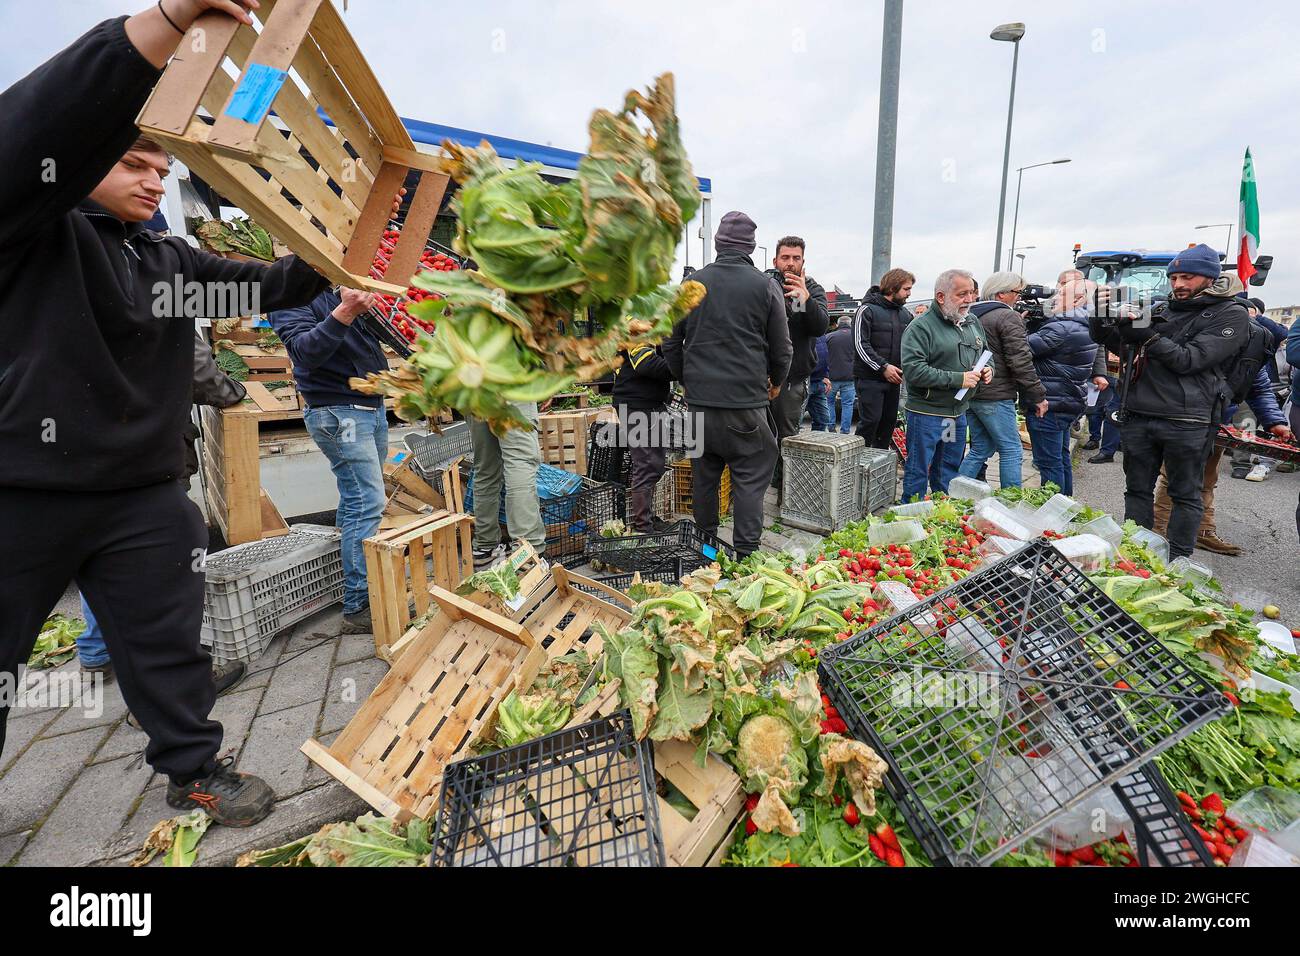 Die Landwirte werfen ihre Erzeugnisse, Obst und Gemüse während der Demonstration aus Protest gegen die von der EU genehmigten "Grünen Deal"-Initiativen weg Stockfoto